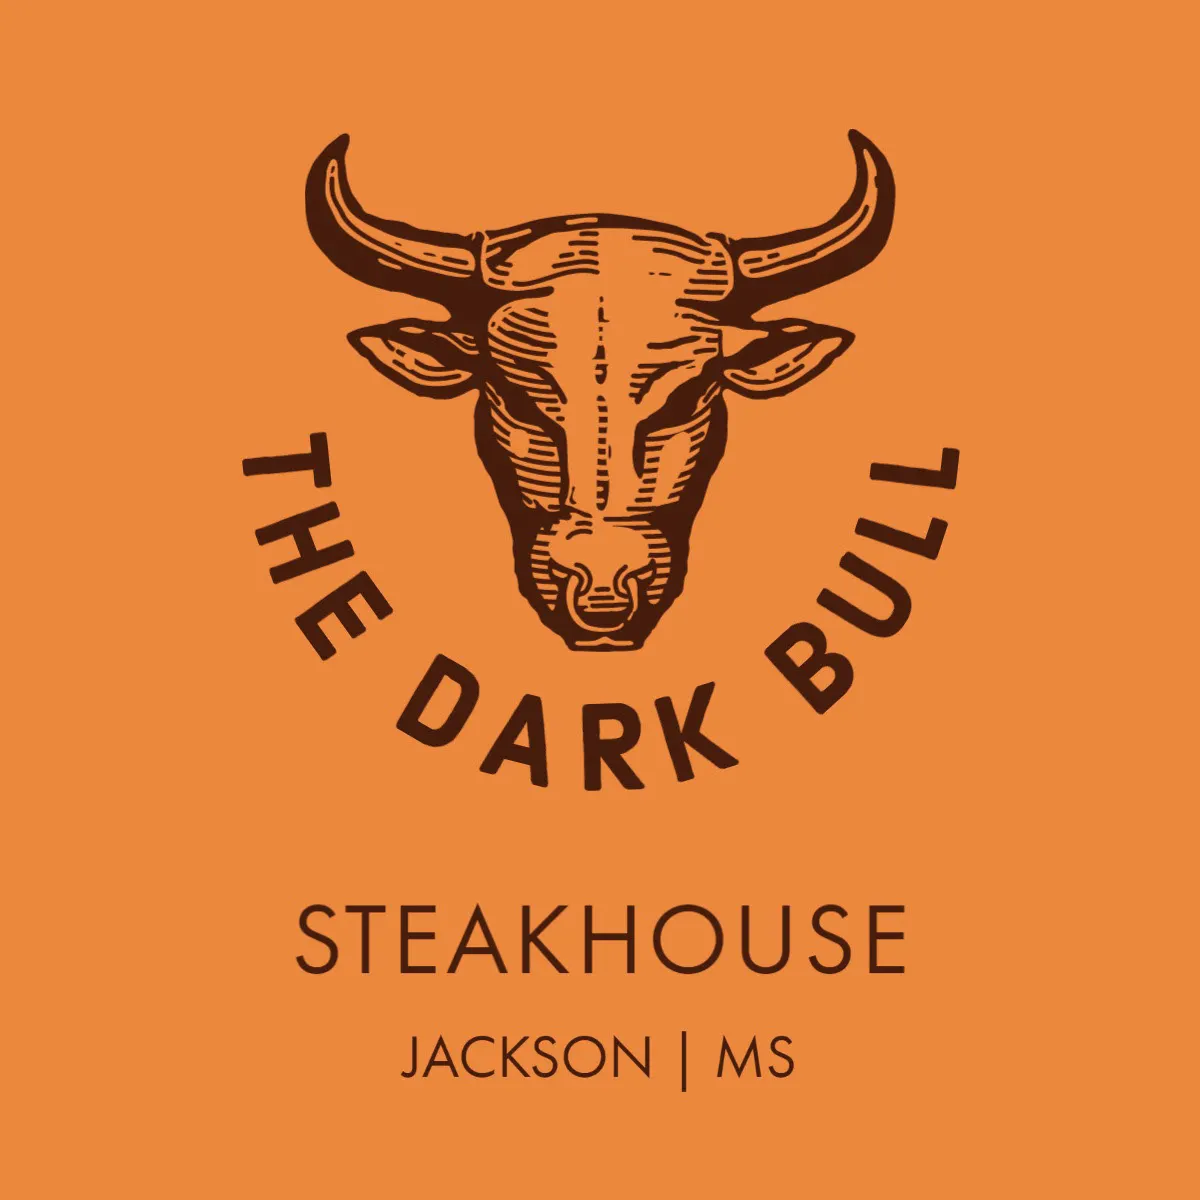 Orange And Brown Bull Steakhouse Restaurant Logo